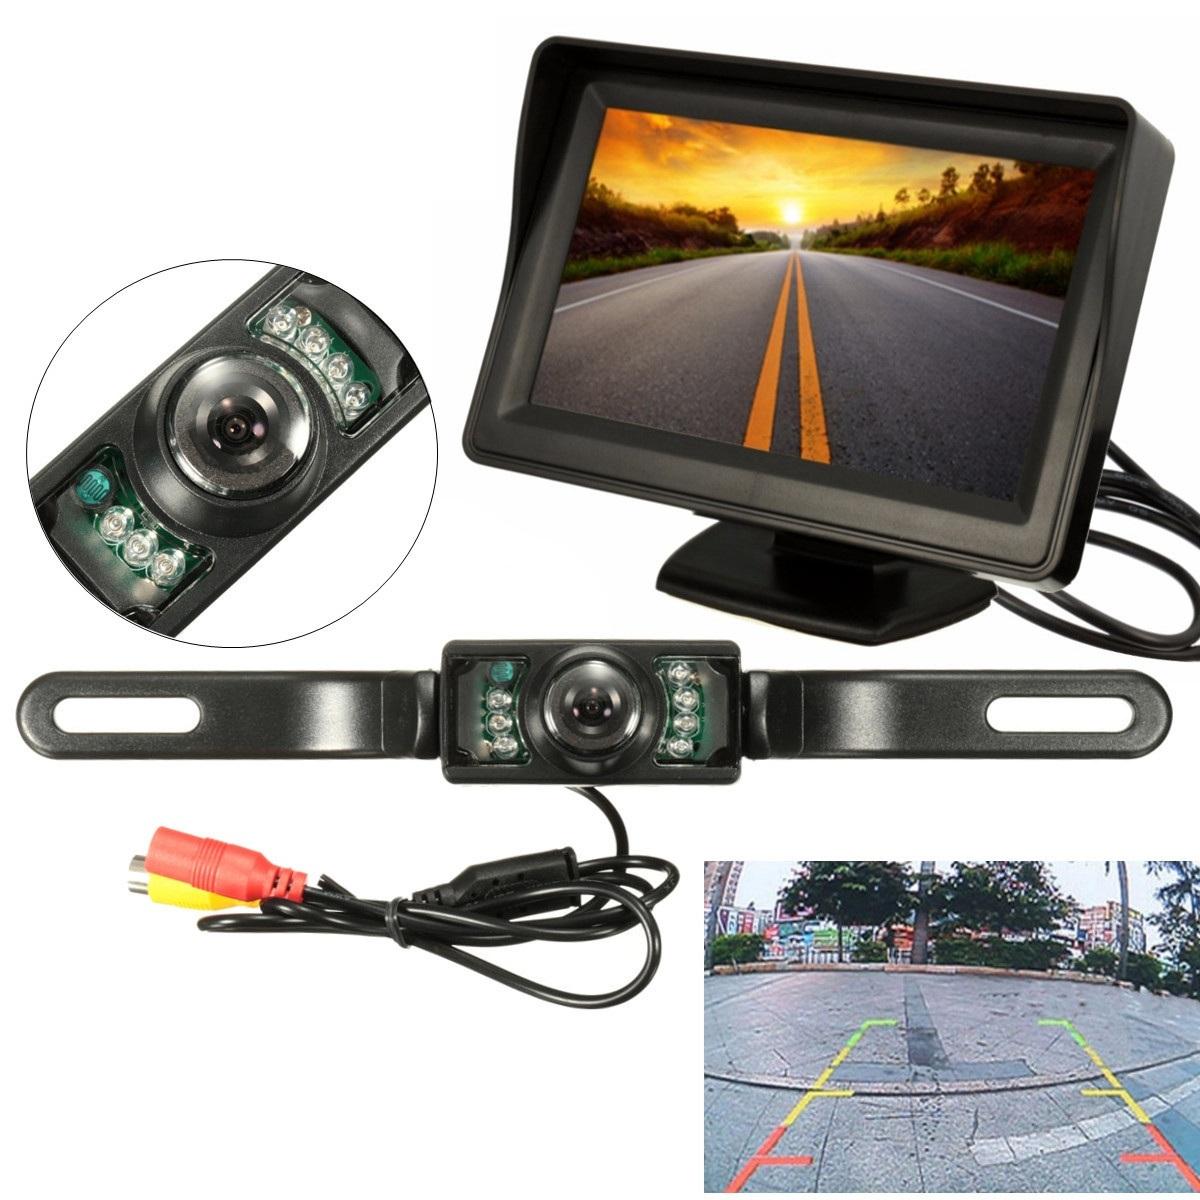 4.3" TFT LCD Monitor Waterproof Night Vision Car Backup Camera Rear View System